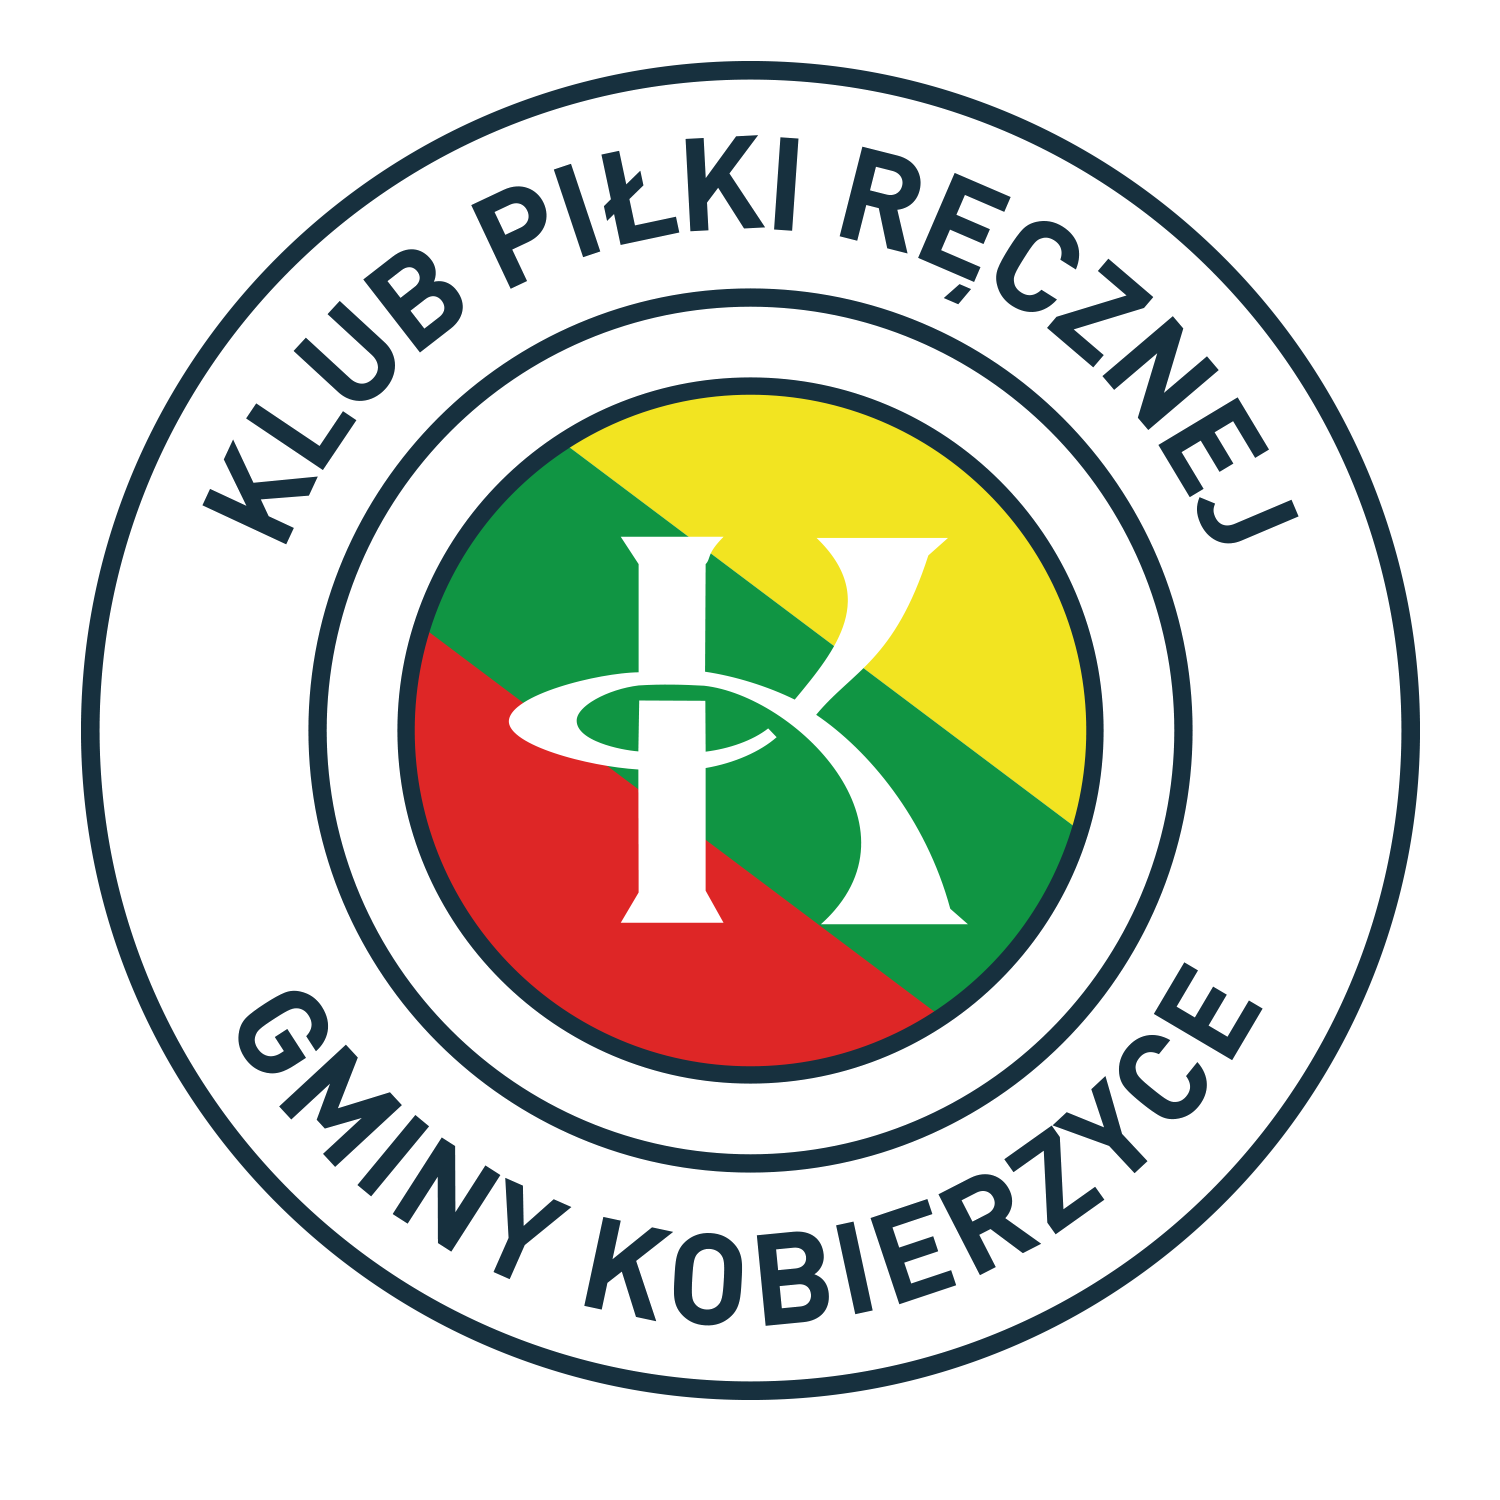 KPR Gminy Kobierzyce logo